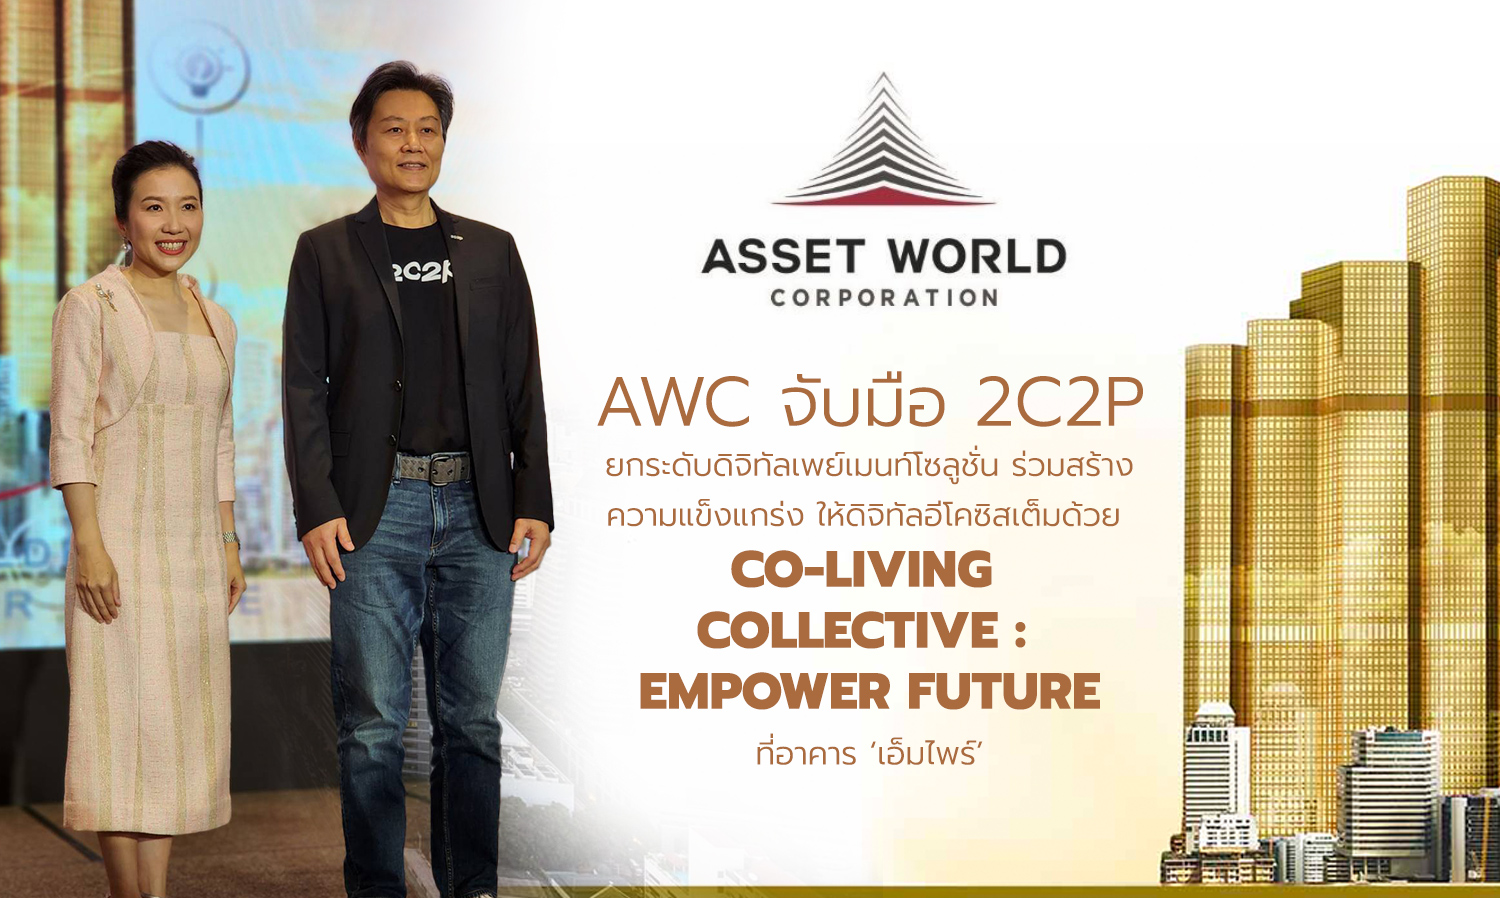 AWC ปั้น เอ็มไพร์ สร้างพื้นที่ Co-Living ที่ใหญ่ที่สุด บนอาคารสำนักงาน ในประเทศไทย ให้ผู้เช่า พร้อมสิทธิประโยชน์ AWI 